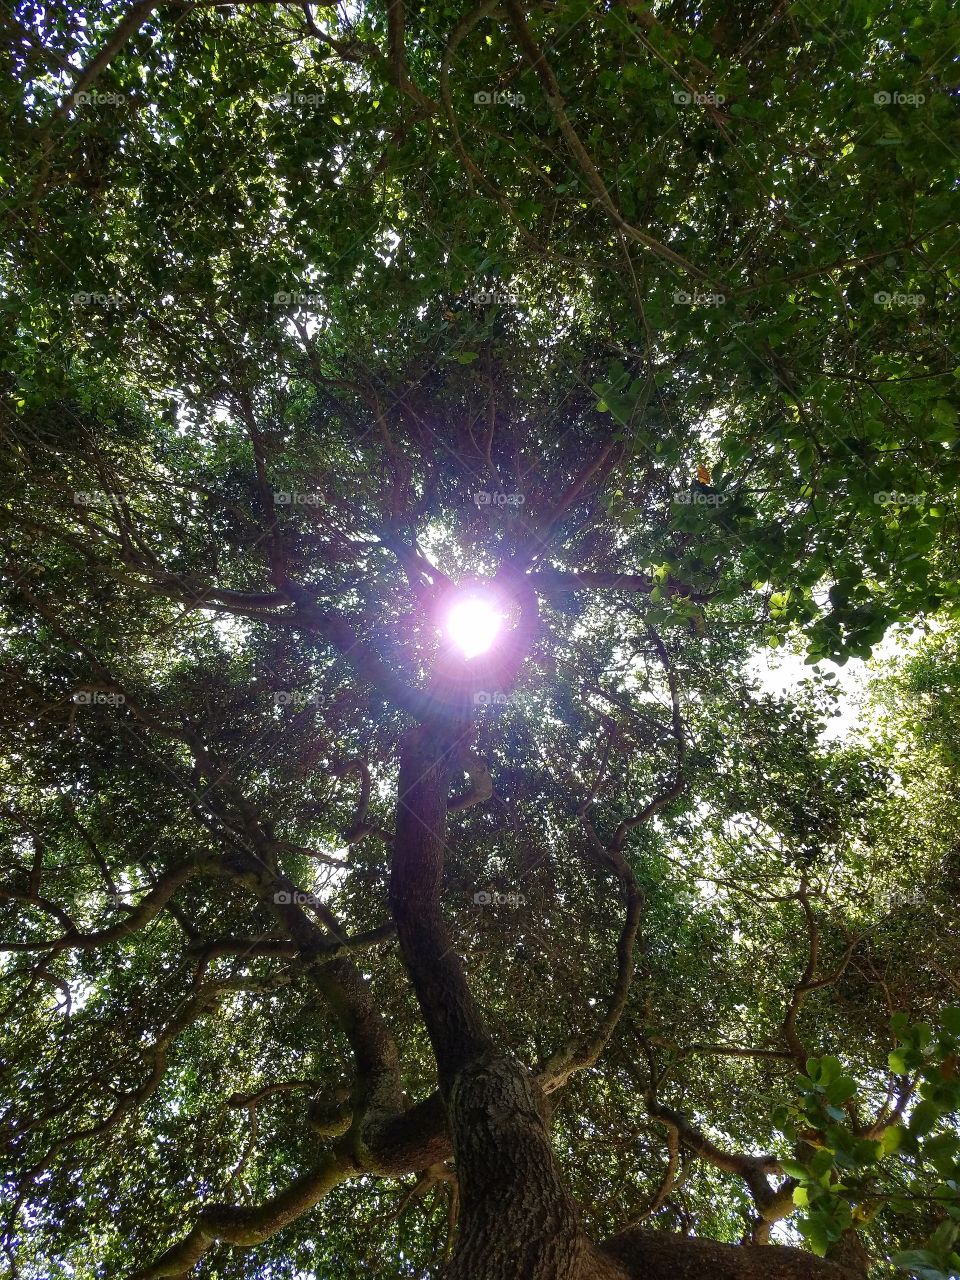 Sun shining through branches